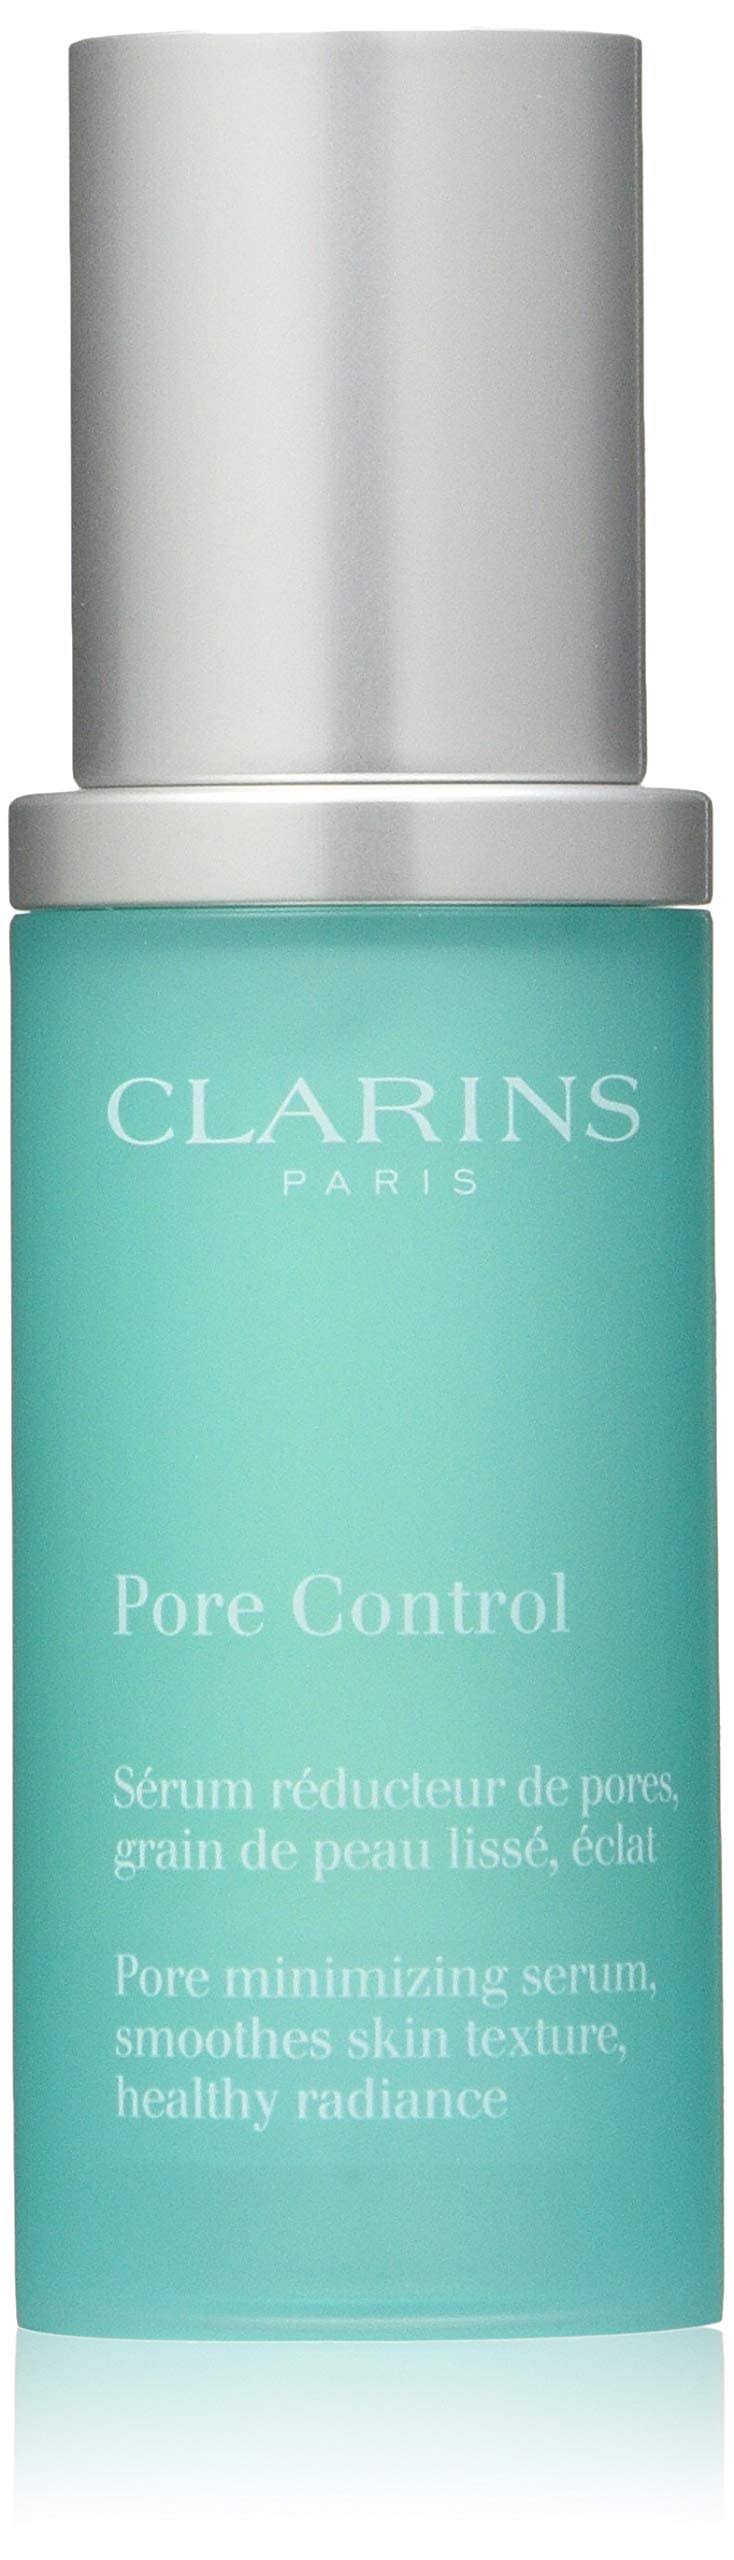 Clarins Pore Control Serum - 30ml